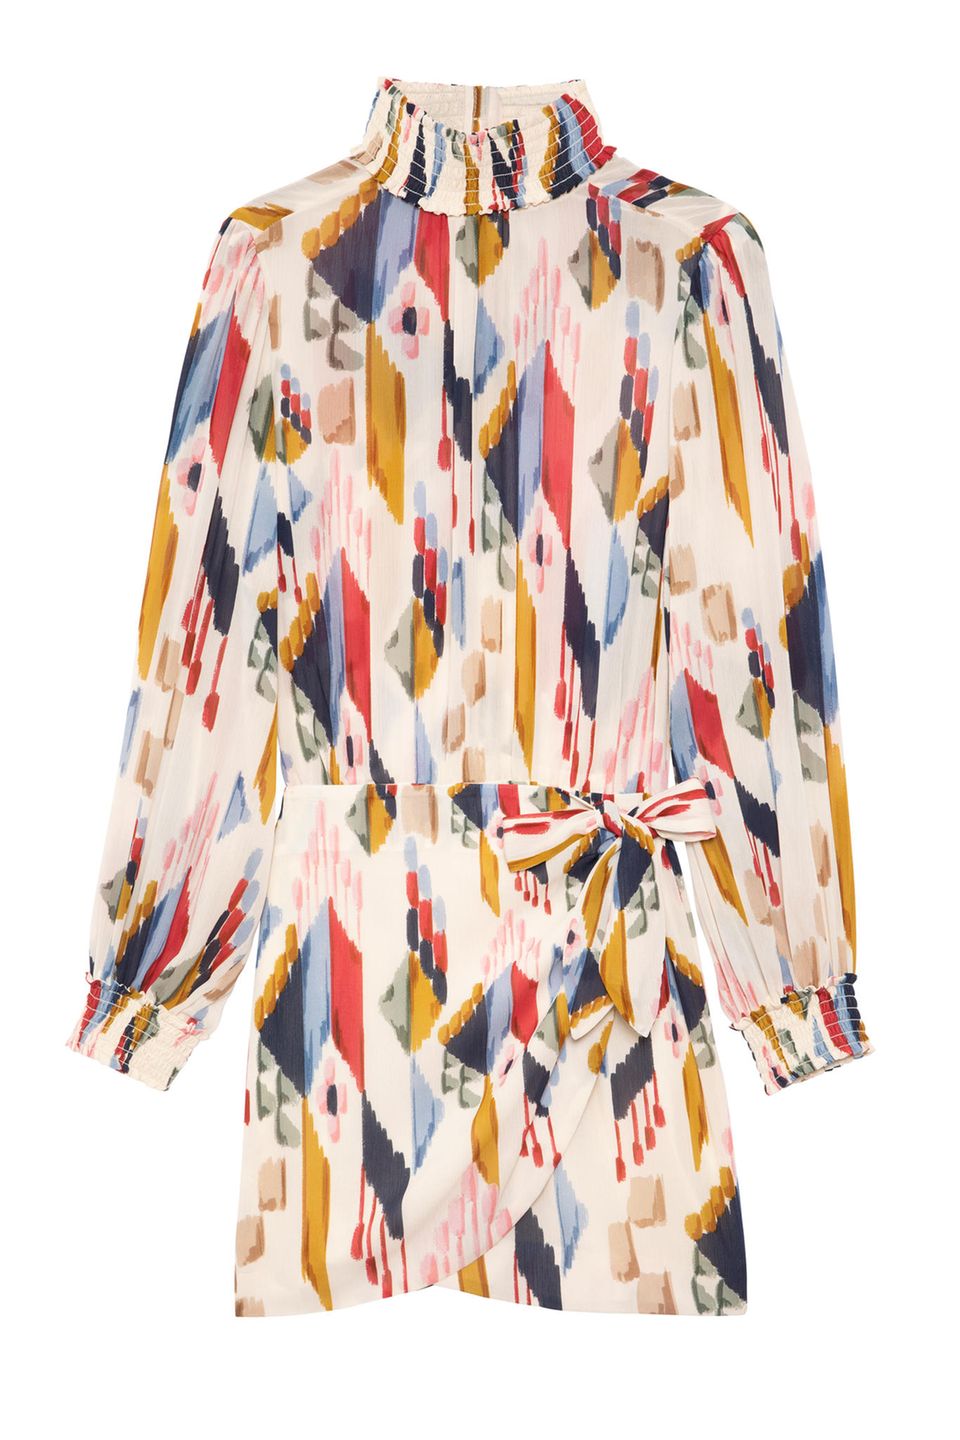 Wildes Muster, fließender Schnitt und luftiges Material - dürfen wir vorstellen: Das perfekte Sommerkleid! Von Sézane, ca. 145 Euro.